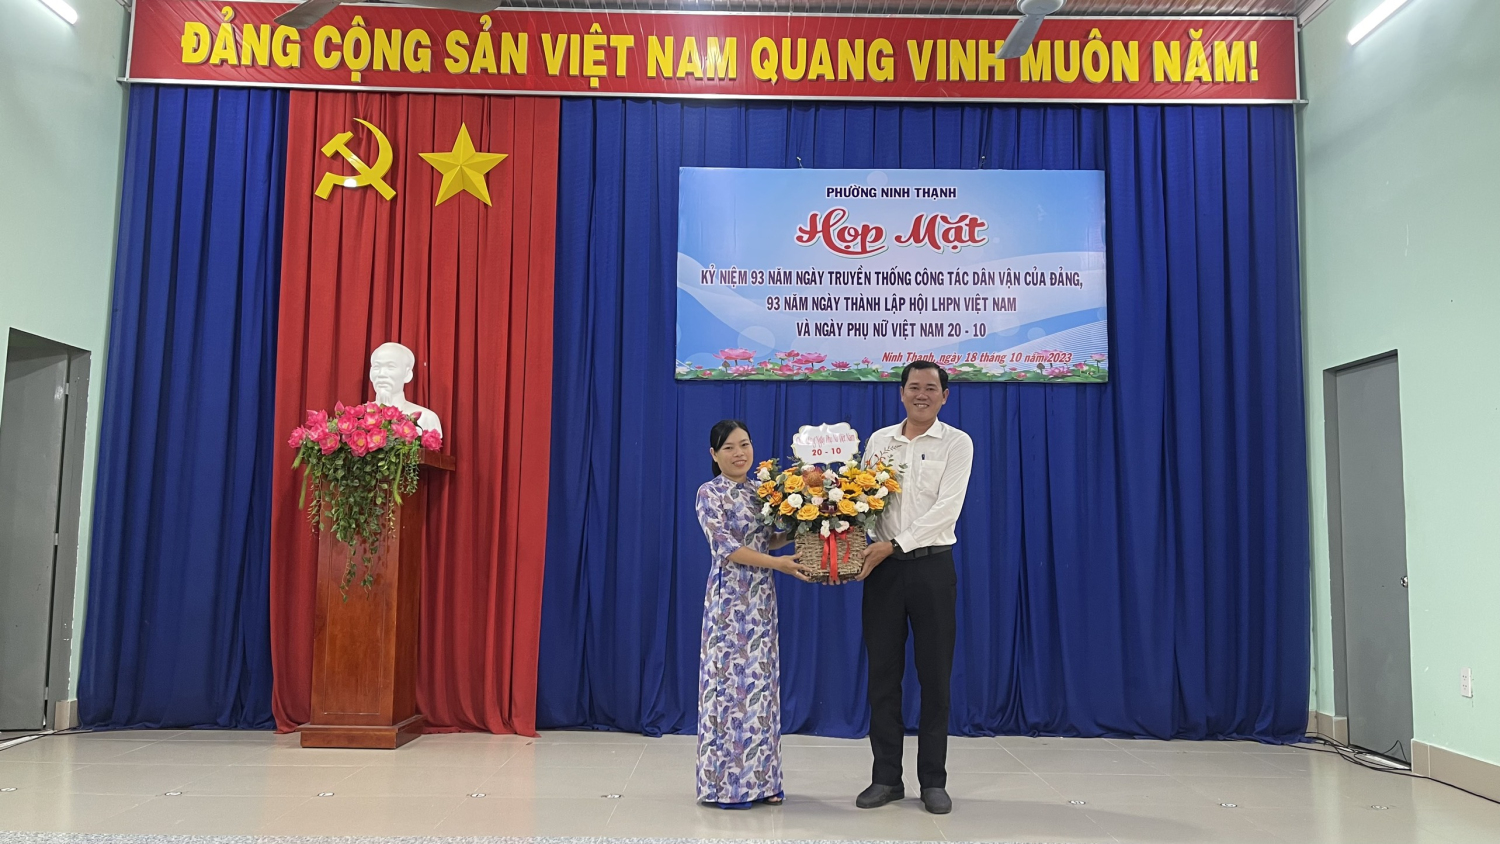 Họp mặt kỷ niệm 93 năm ngày truyền thống công tác Dân vận của Đảng (15/10) và kỷ niệm 93 năm ngày thành lập Hội LHPN Việt Nam (20/10)